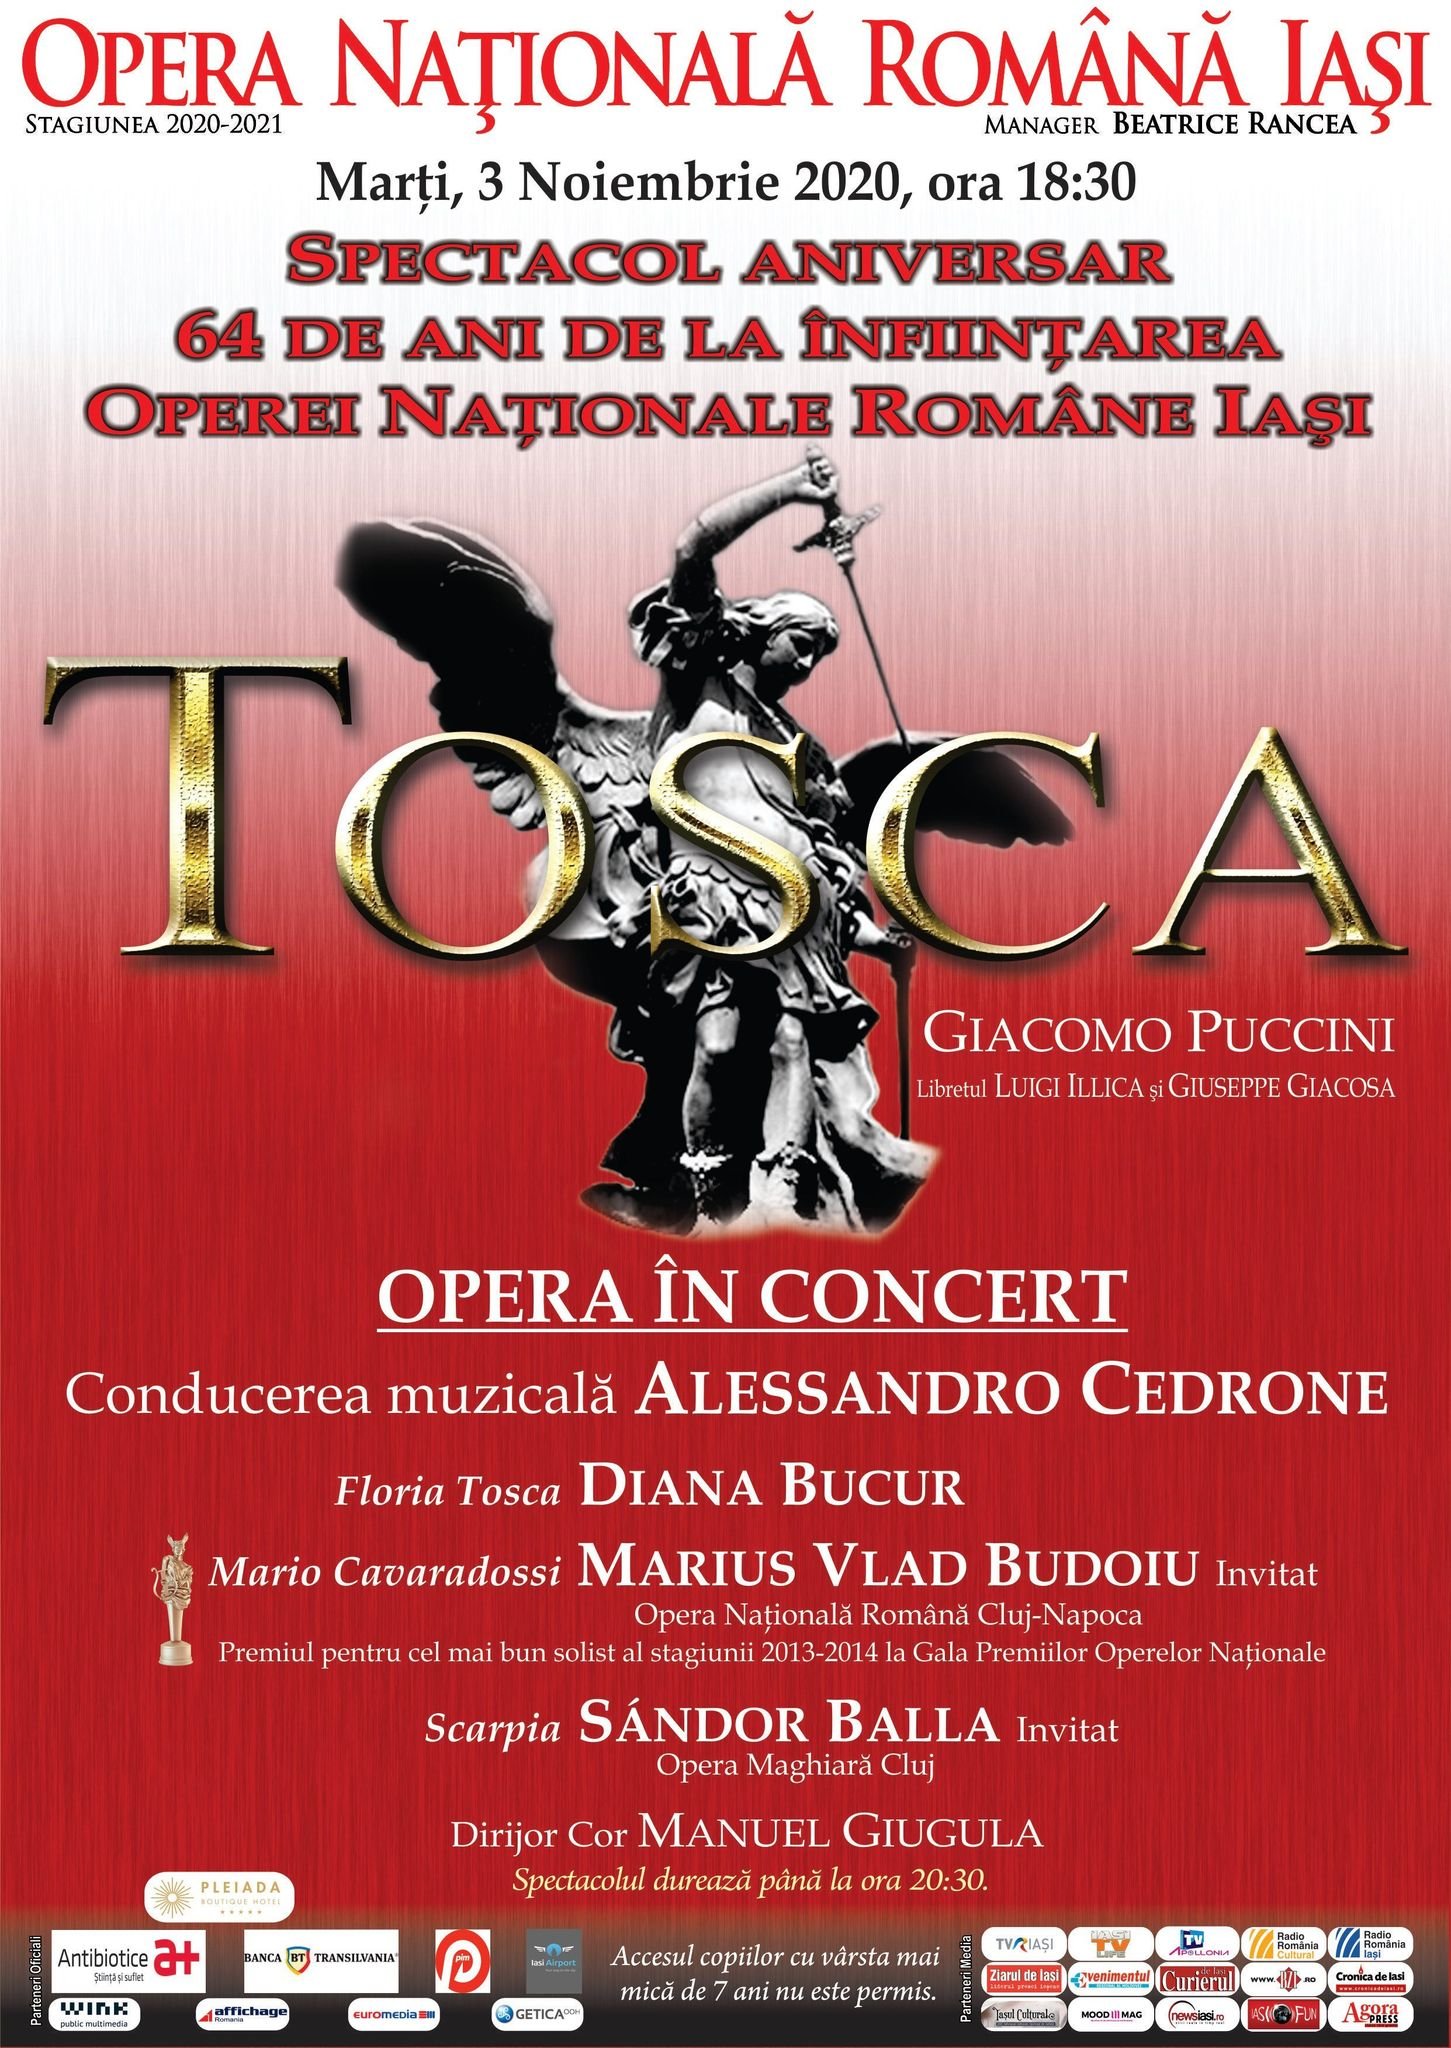  Spectacol aniversar la 64 de ani de la înființarea Operei ieșene: Tosca, de Puccini